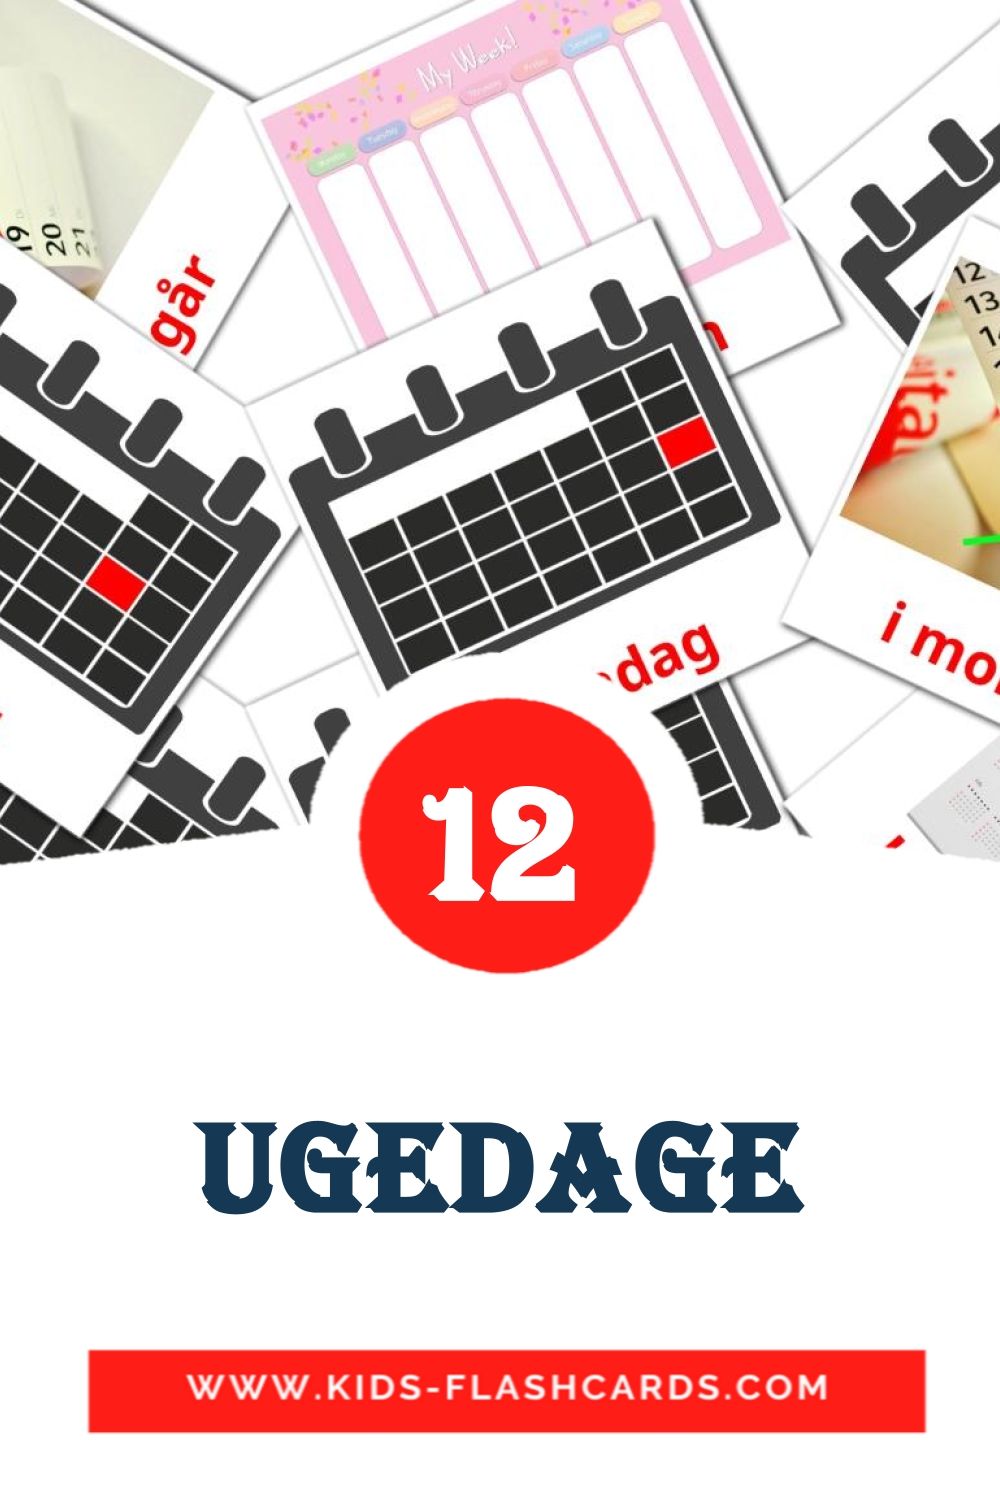 12 Ugedage Bildkarten für den Kindergarten auf Dansk